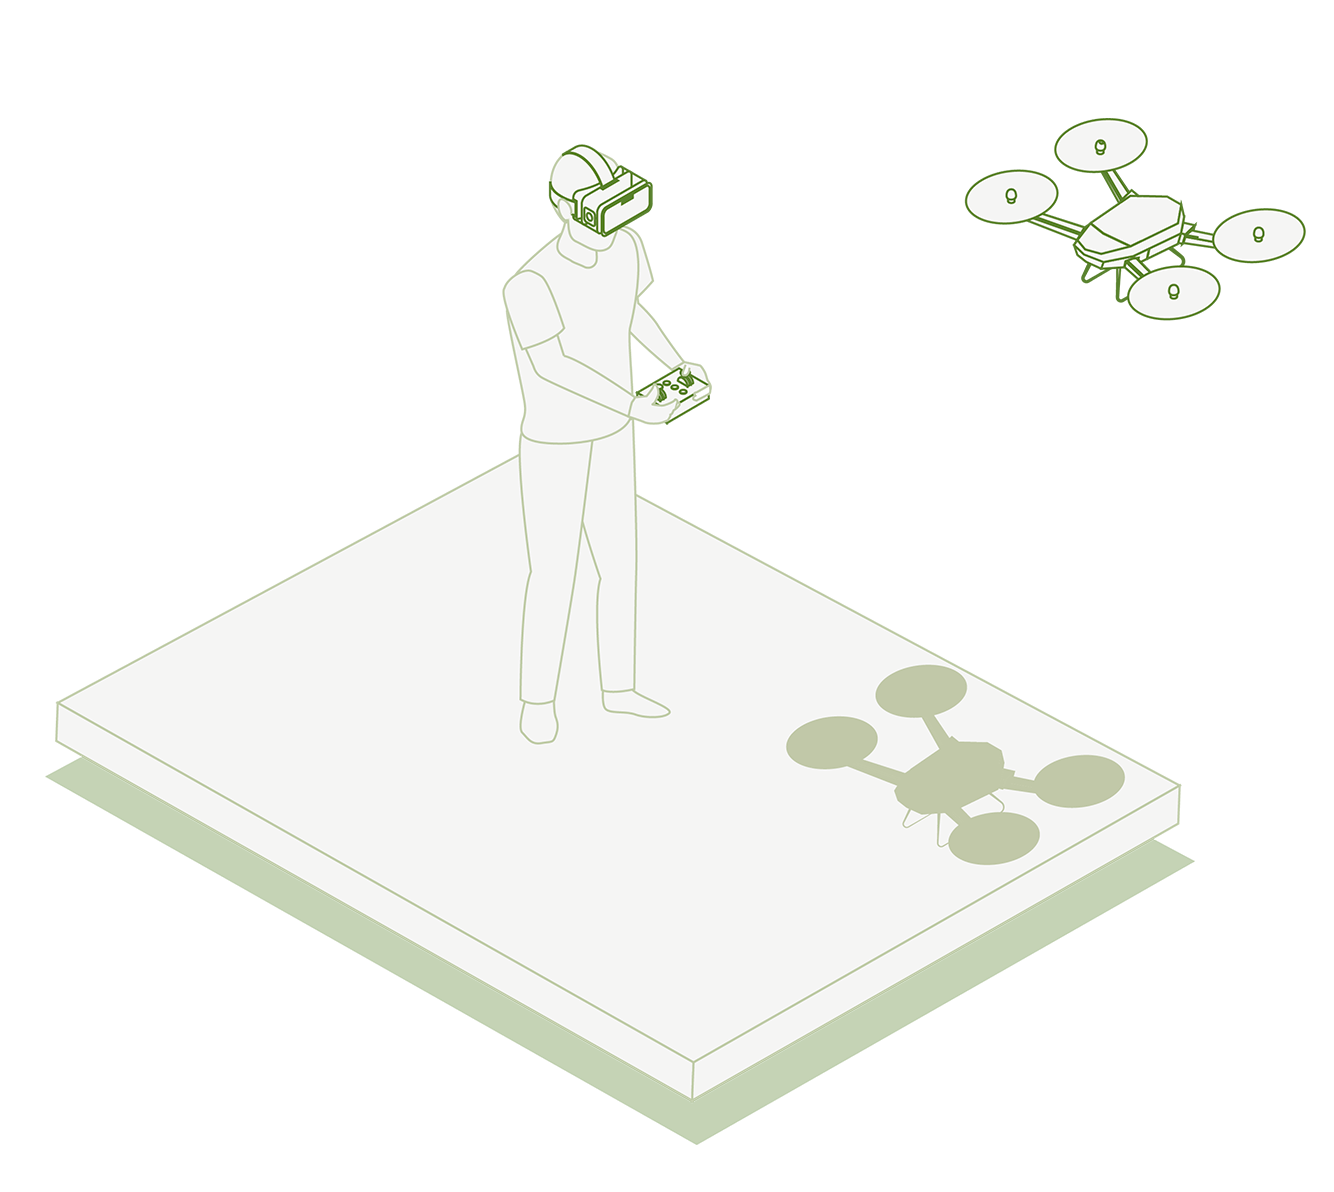 Illustrazione isometrica di un gamer con indosso un visore per la realtà virtuale mentre telecomanda un drone.